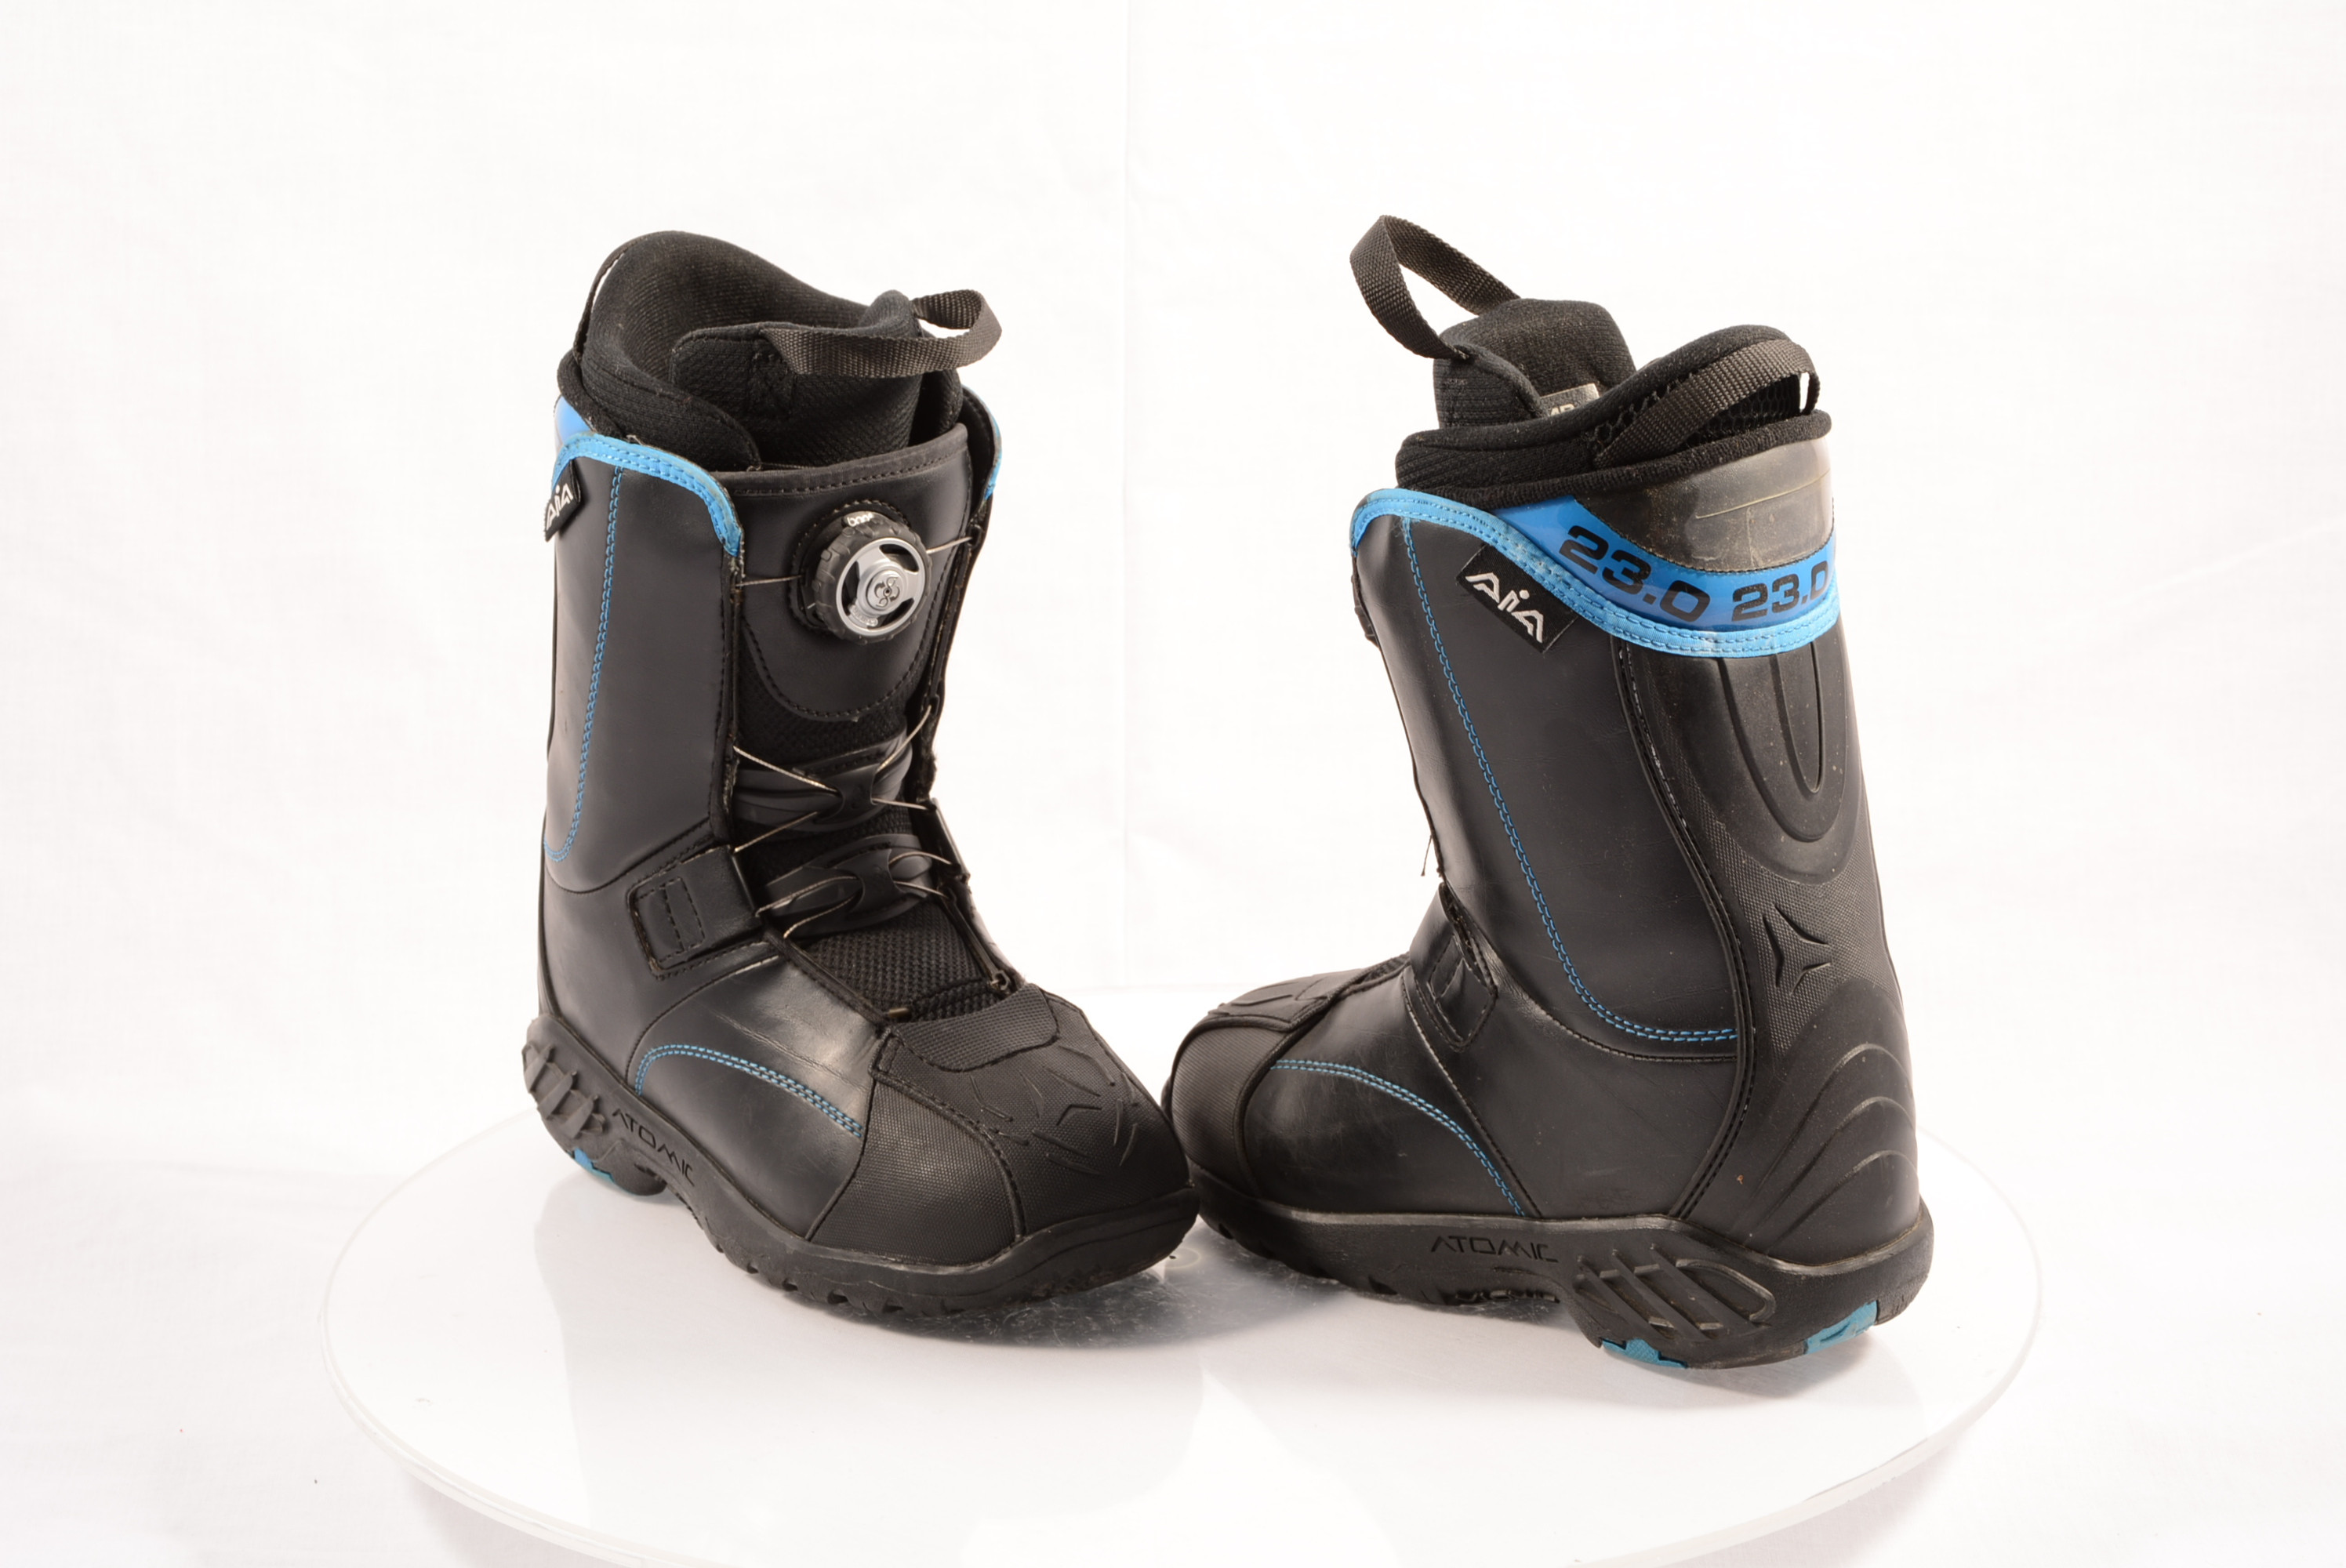 stimuleren mat Viool snowboard schoenen ATOMIC AIA BOA tec, BLACK/blue - Mardosport.be